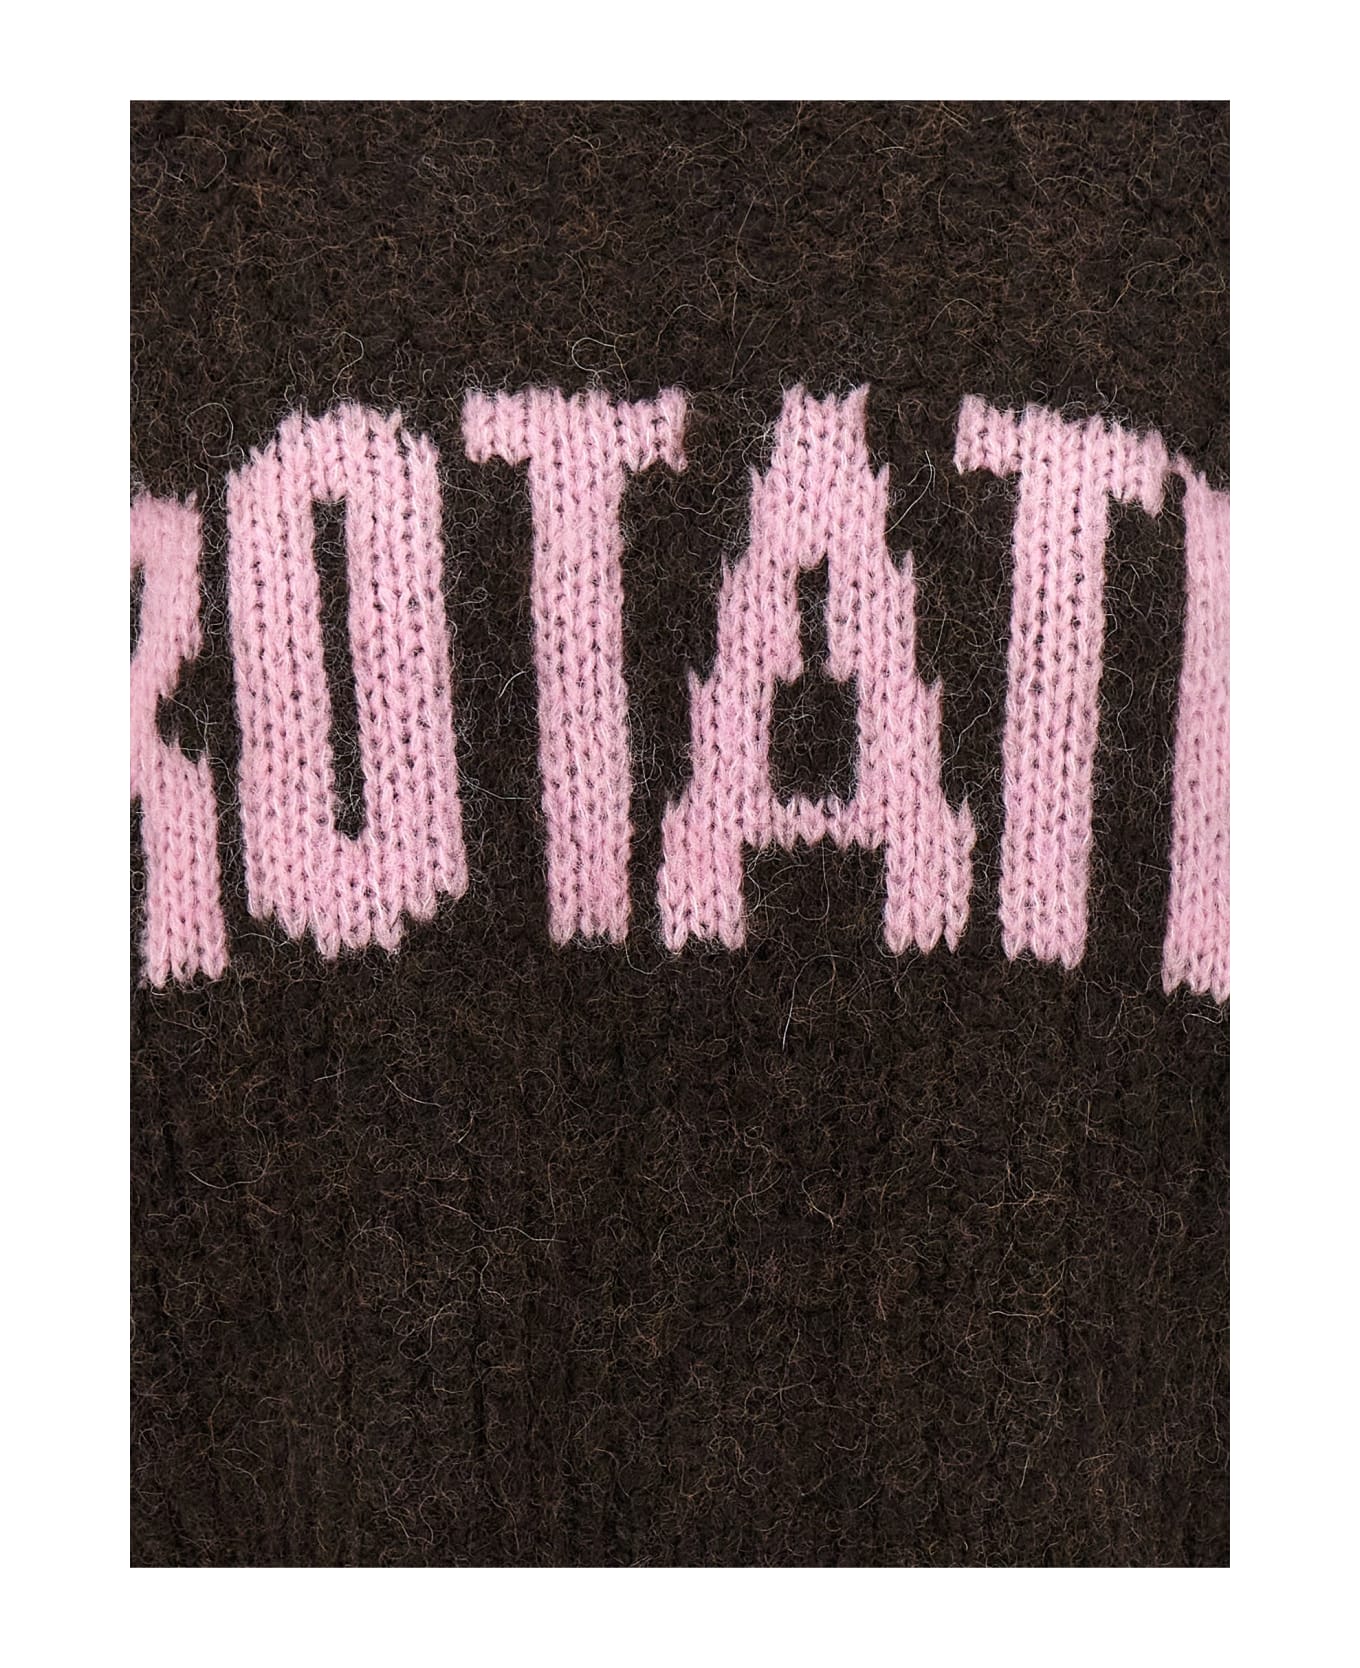 Rotate by Birger Christensen Logo Sweater - Brown